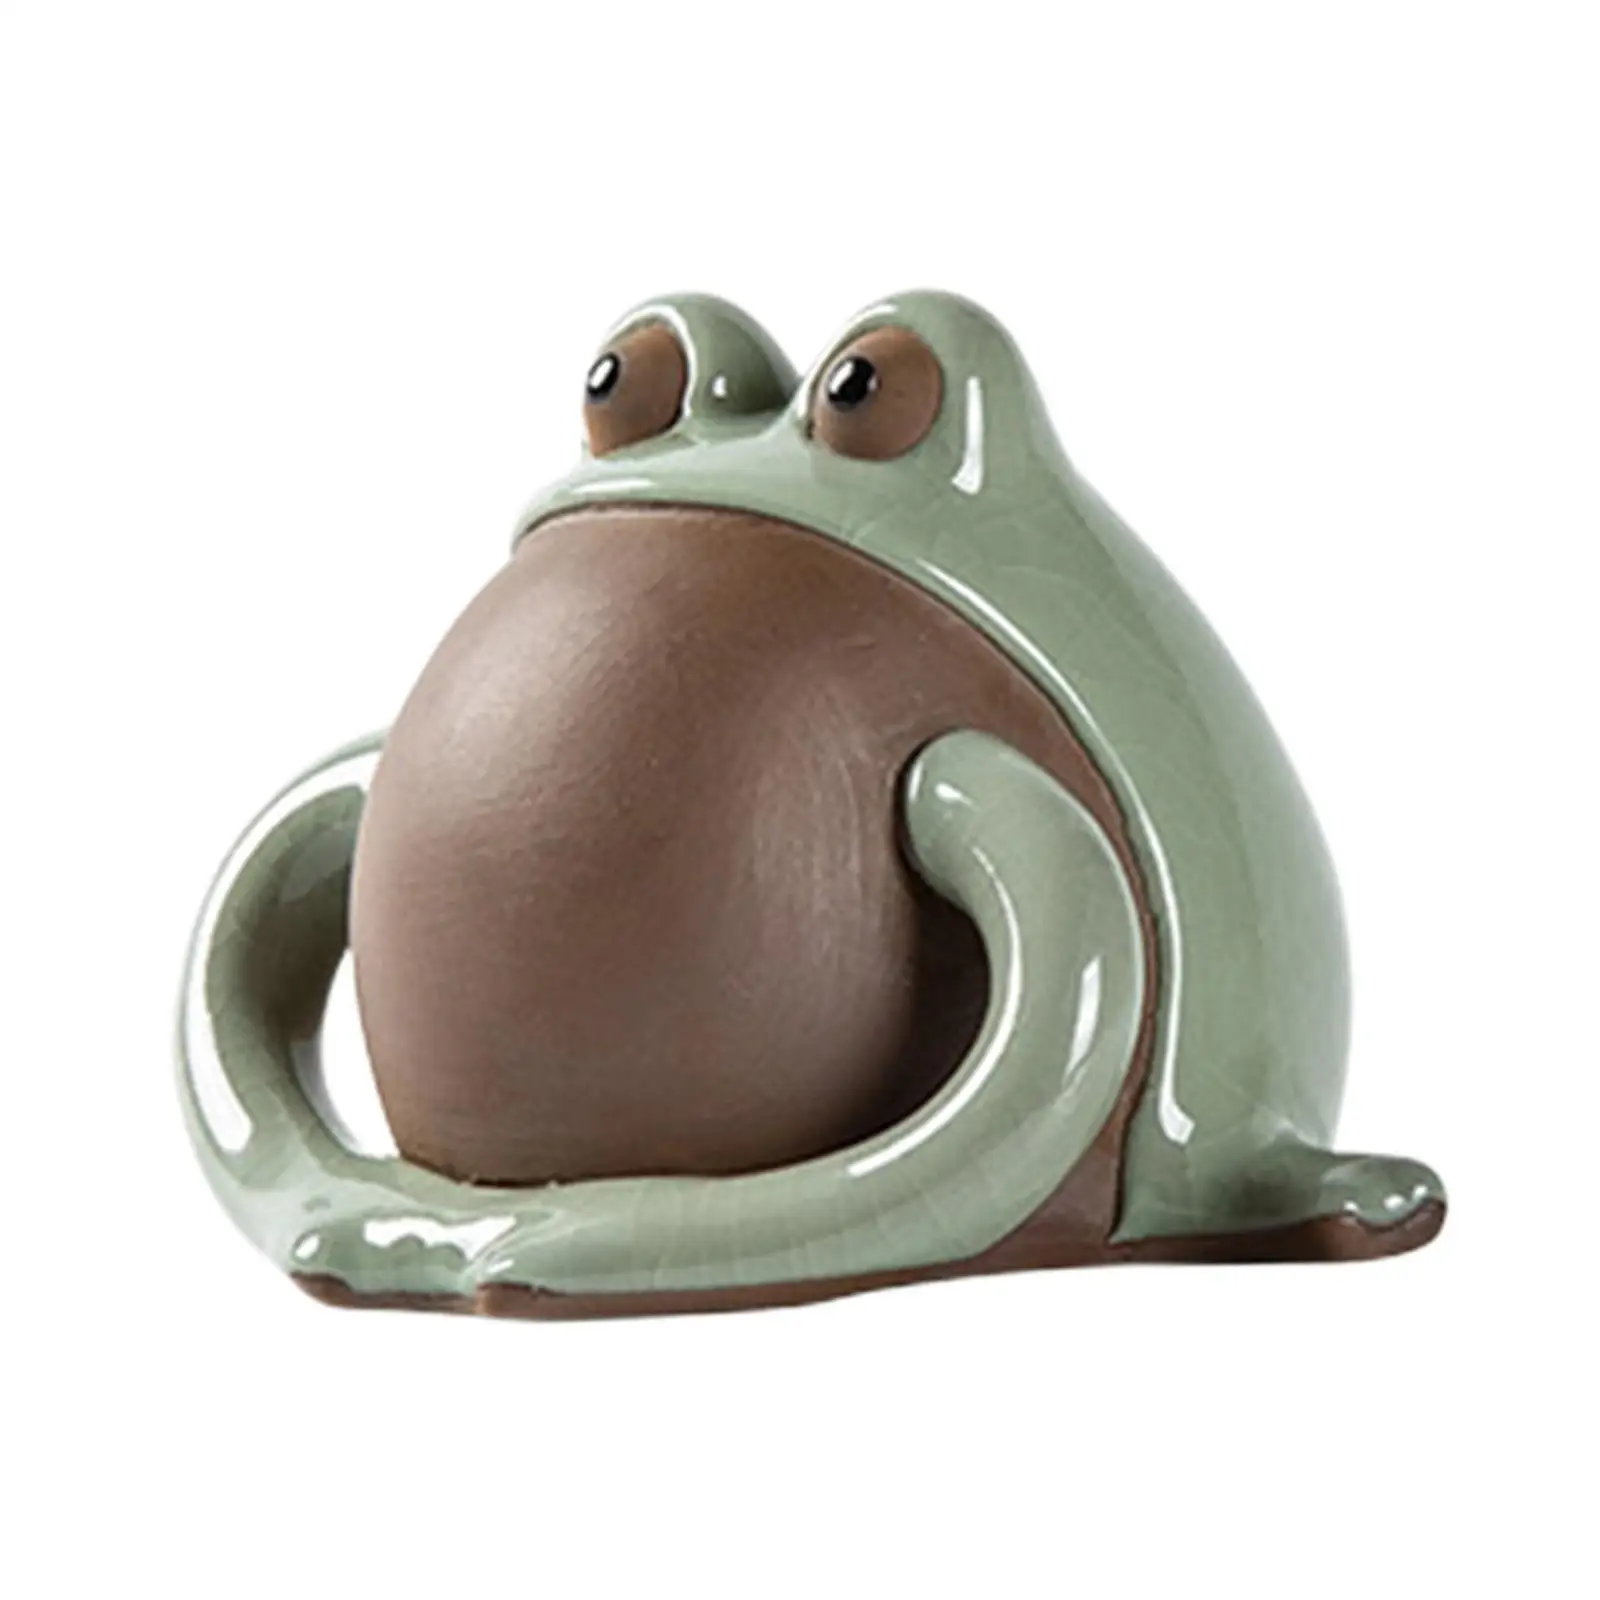 Frog Statue Ornament Tea Tray Accessories Tea Pet Sculpture for Bookcase Office Tea Room Living Room Bedroom